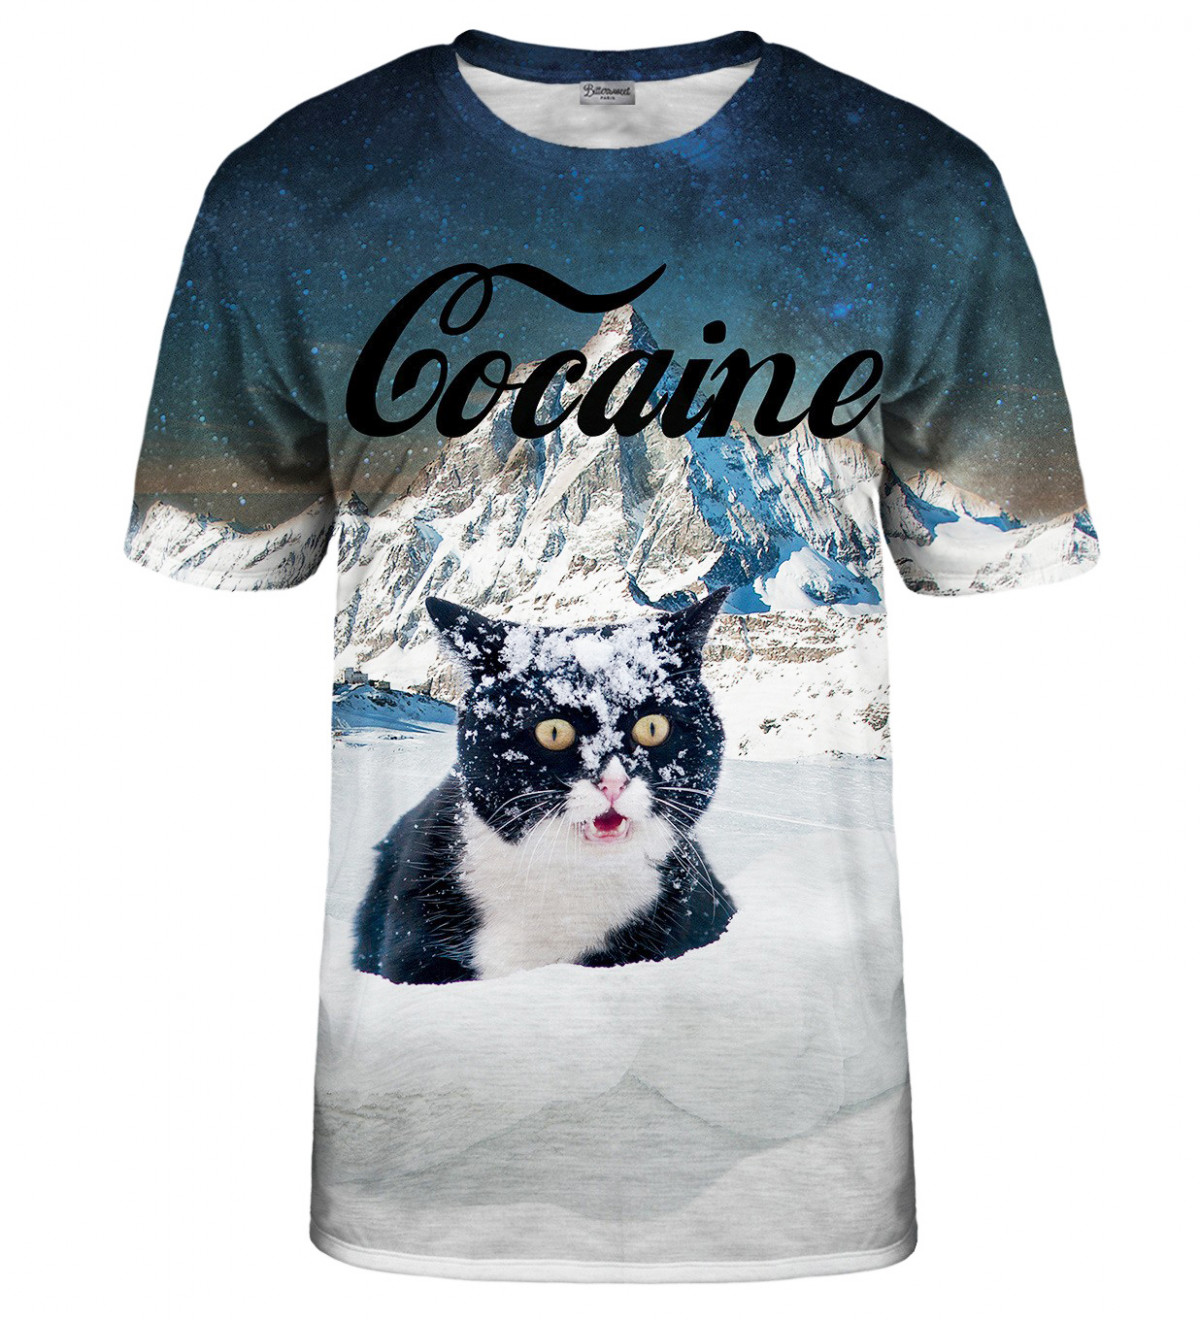 Cocaine Cat T-Shirt - 2XL